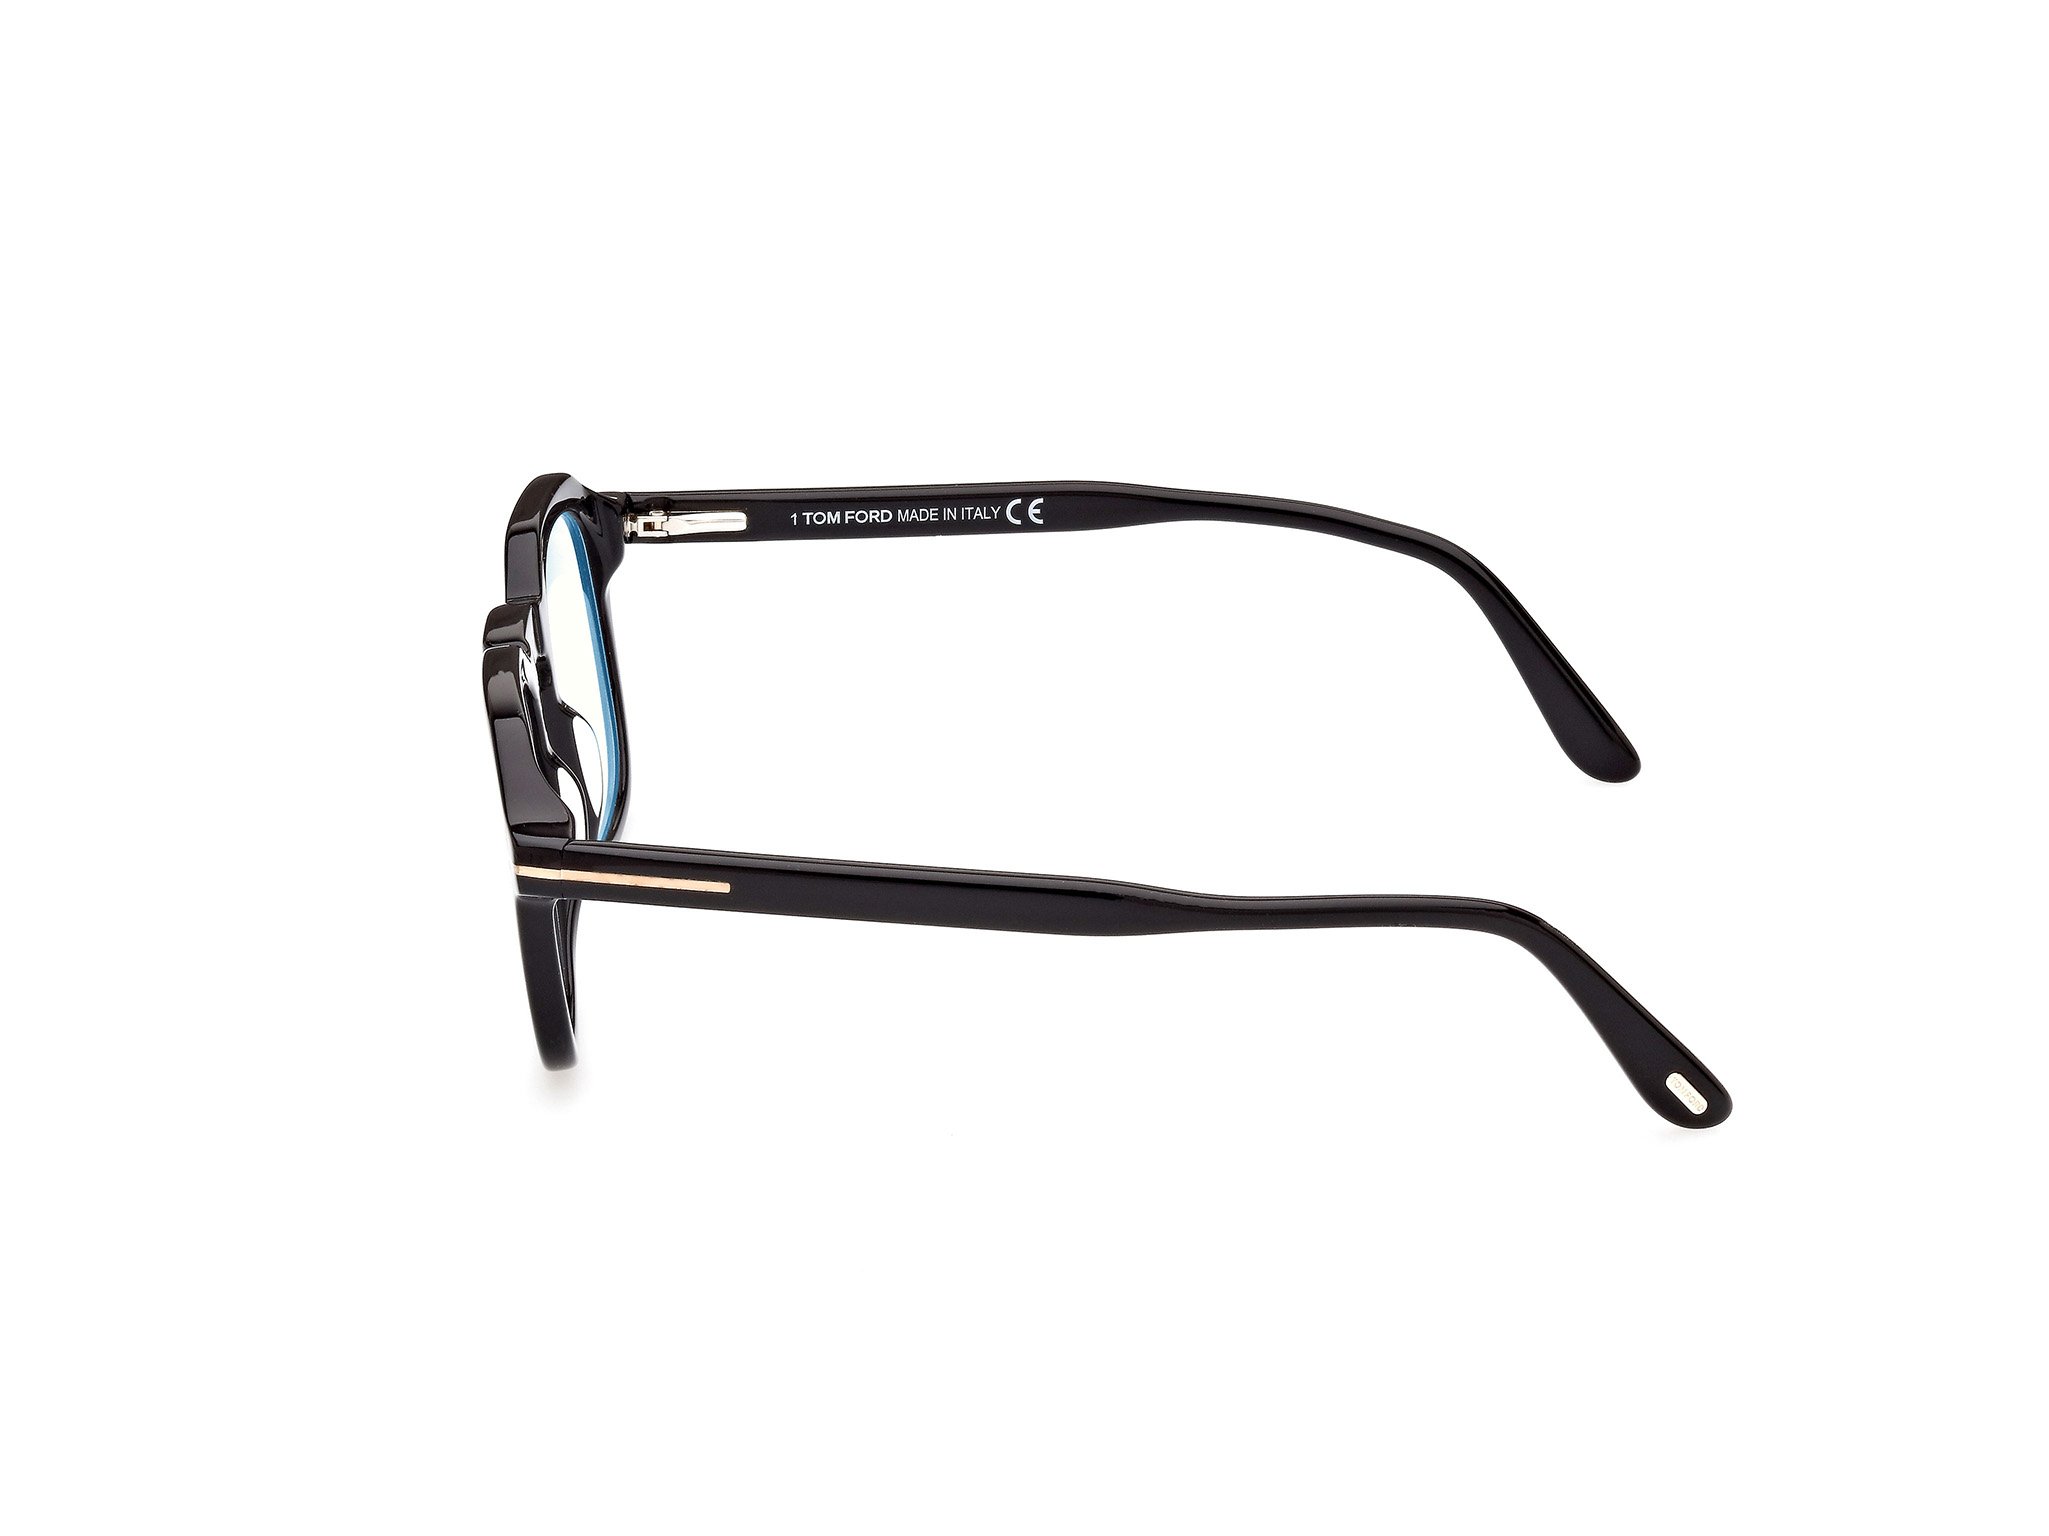 Das Bild zeigt die Korrektionsbrille FT5836-B 001 von der Marke Tom Ford in schwarz.